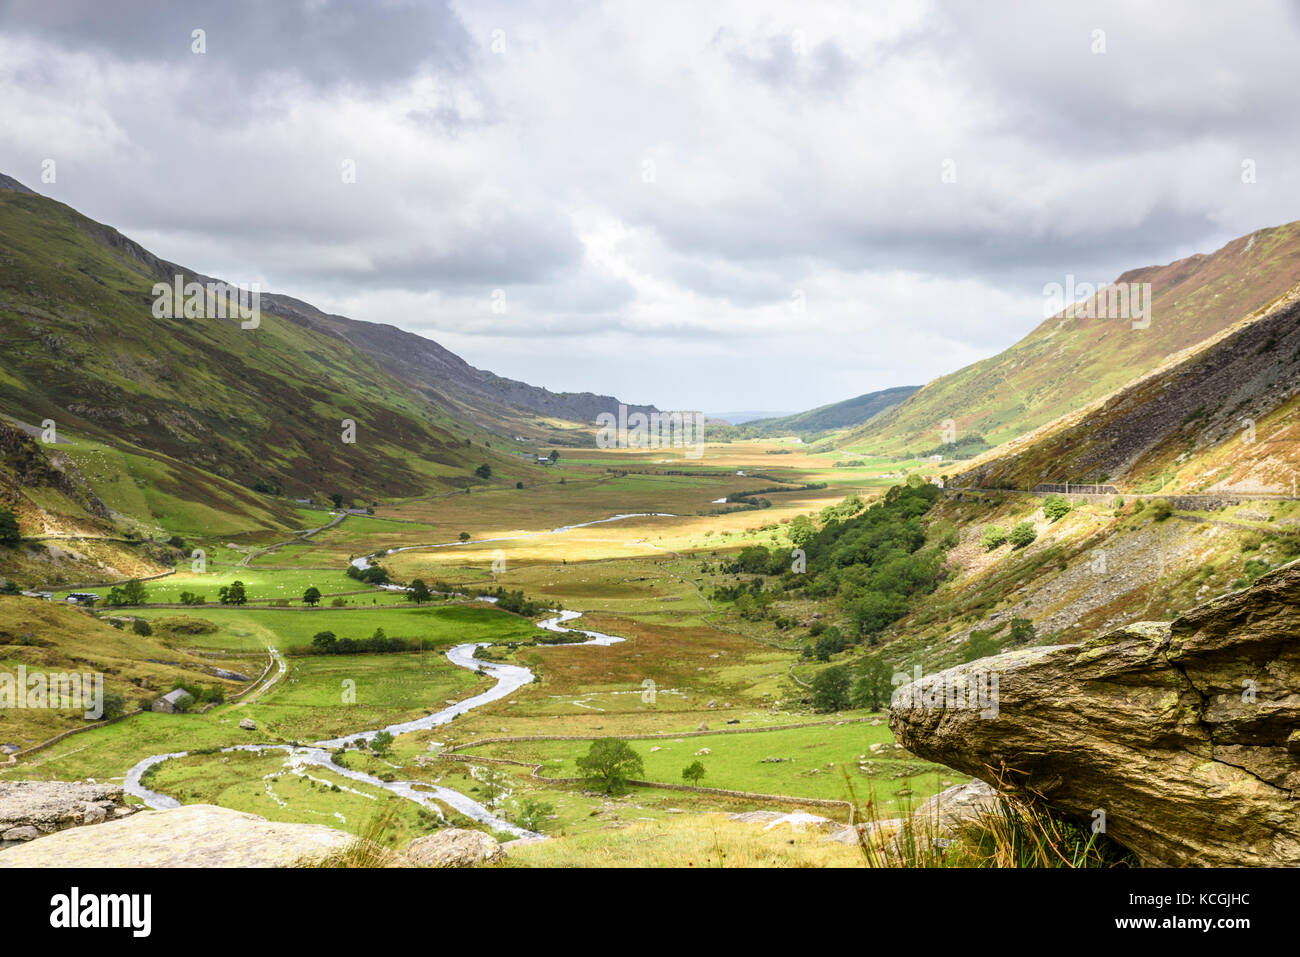 Nant ffrancon valley de foel goch, sur la gauche à pen an wen ole sur la droite, le parc national de Snowdonia, le Pays de Galles Banque D'Images